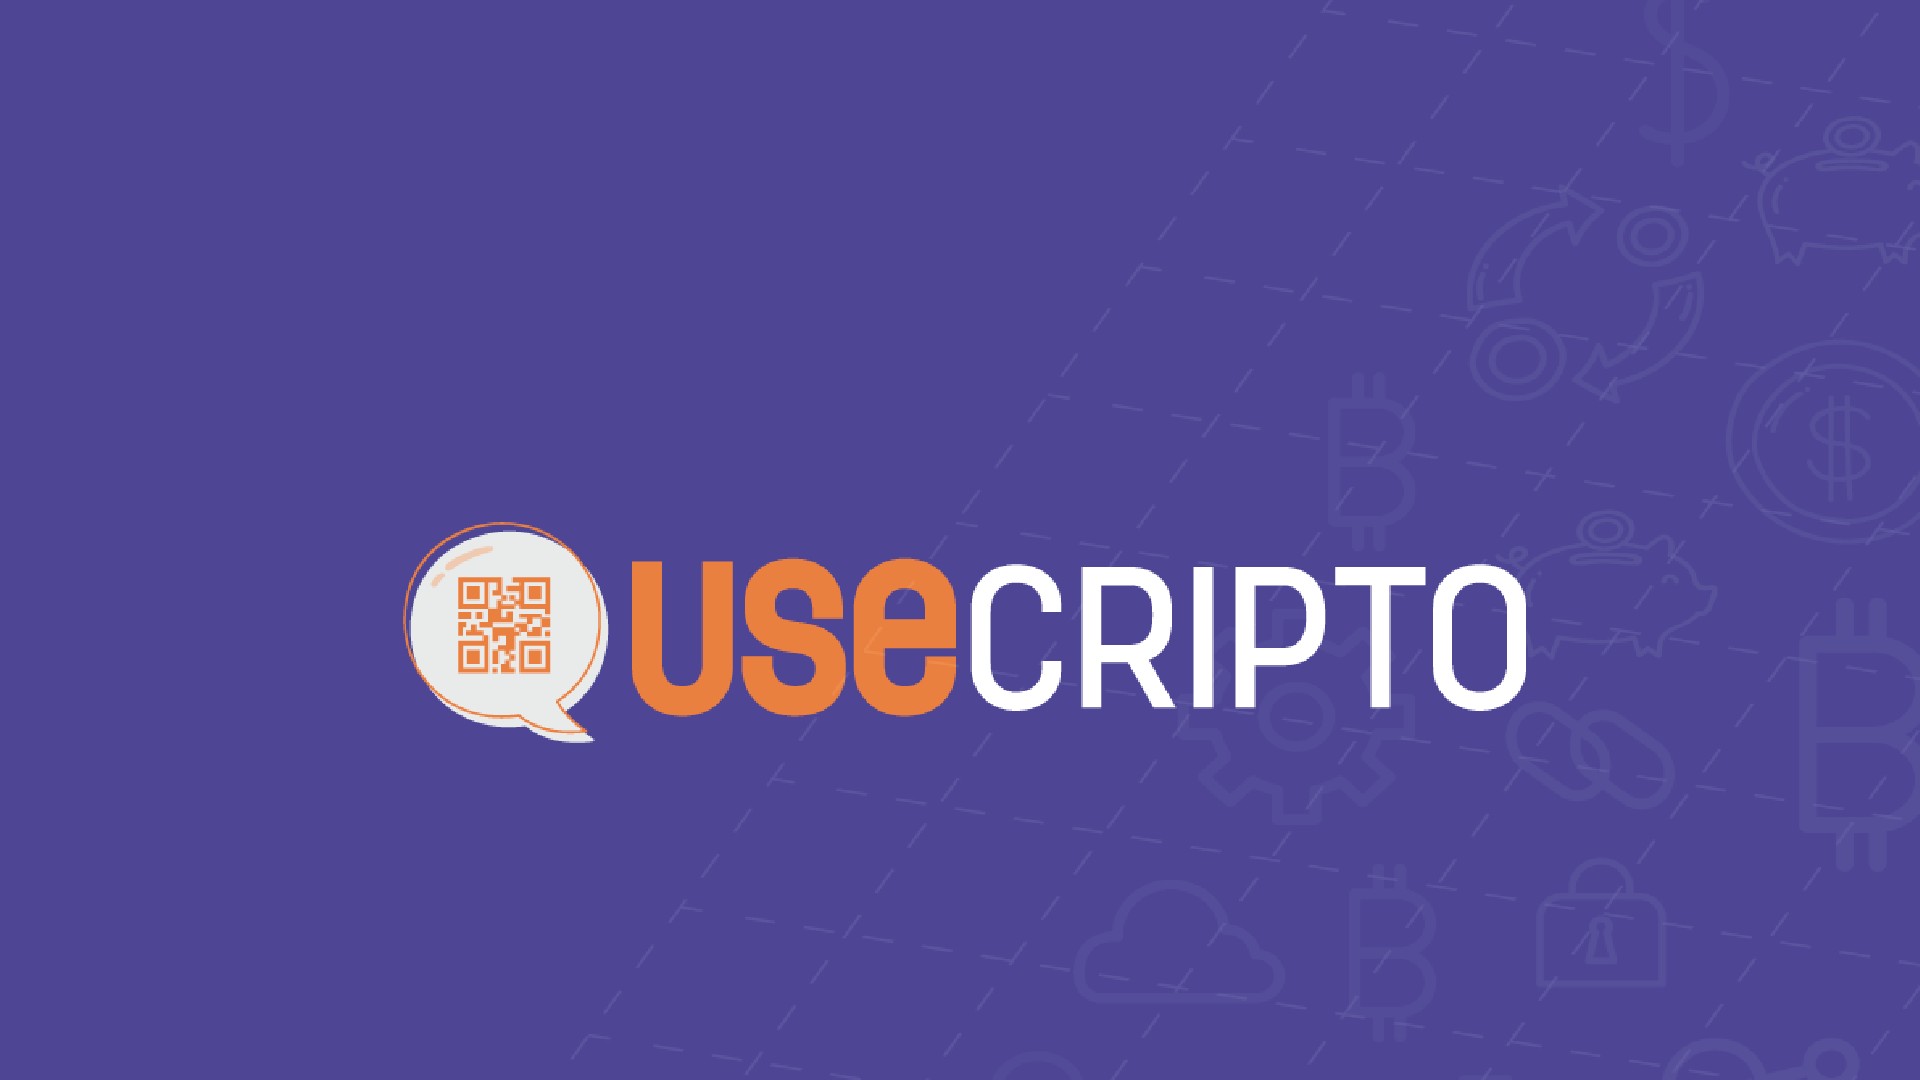 Fundadoras da UseCripto falaram sobre o Bitcoin. Veja